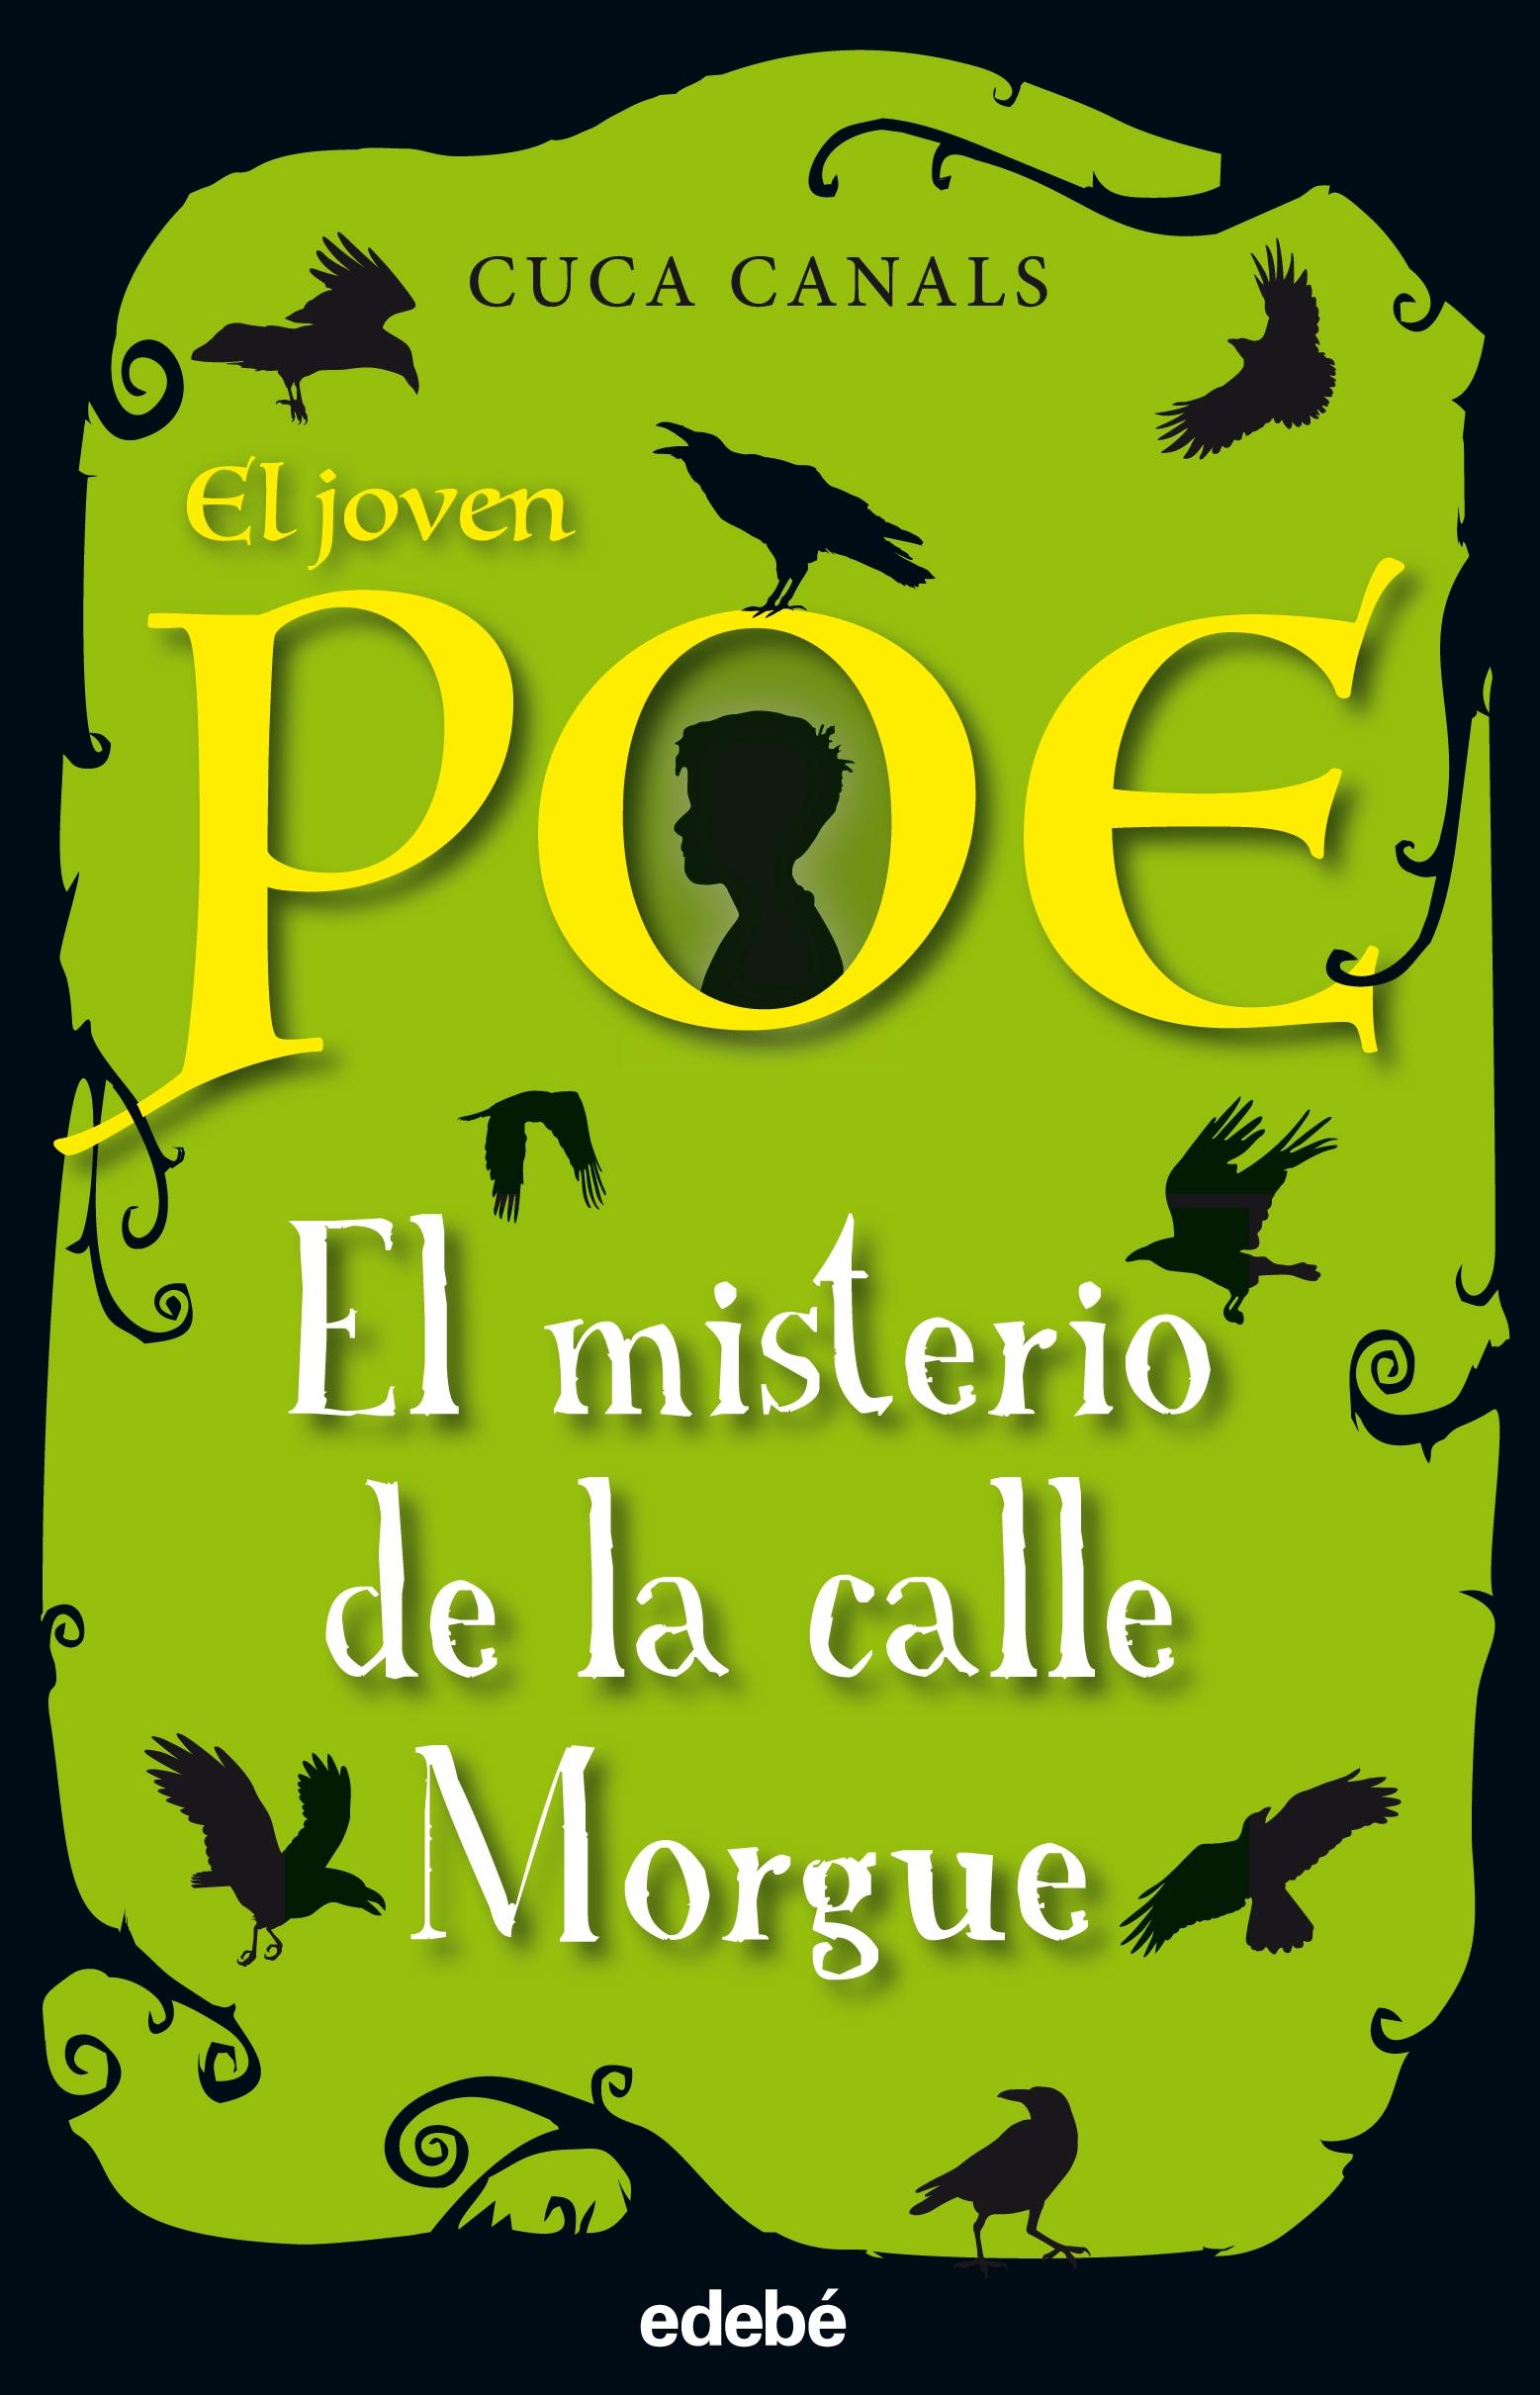 Joven Poe Misterio de la Calle Morgue 1. 